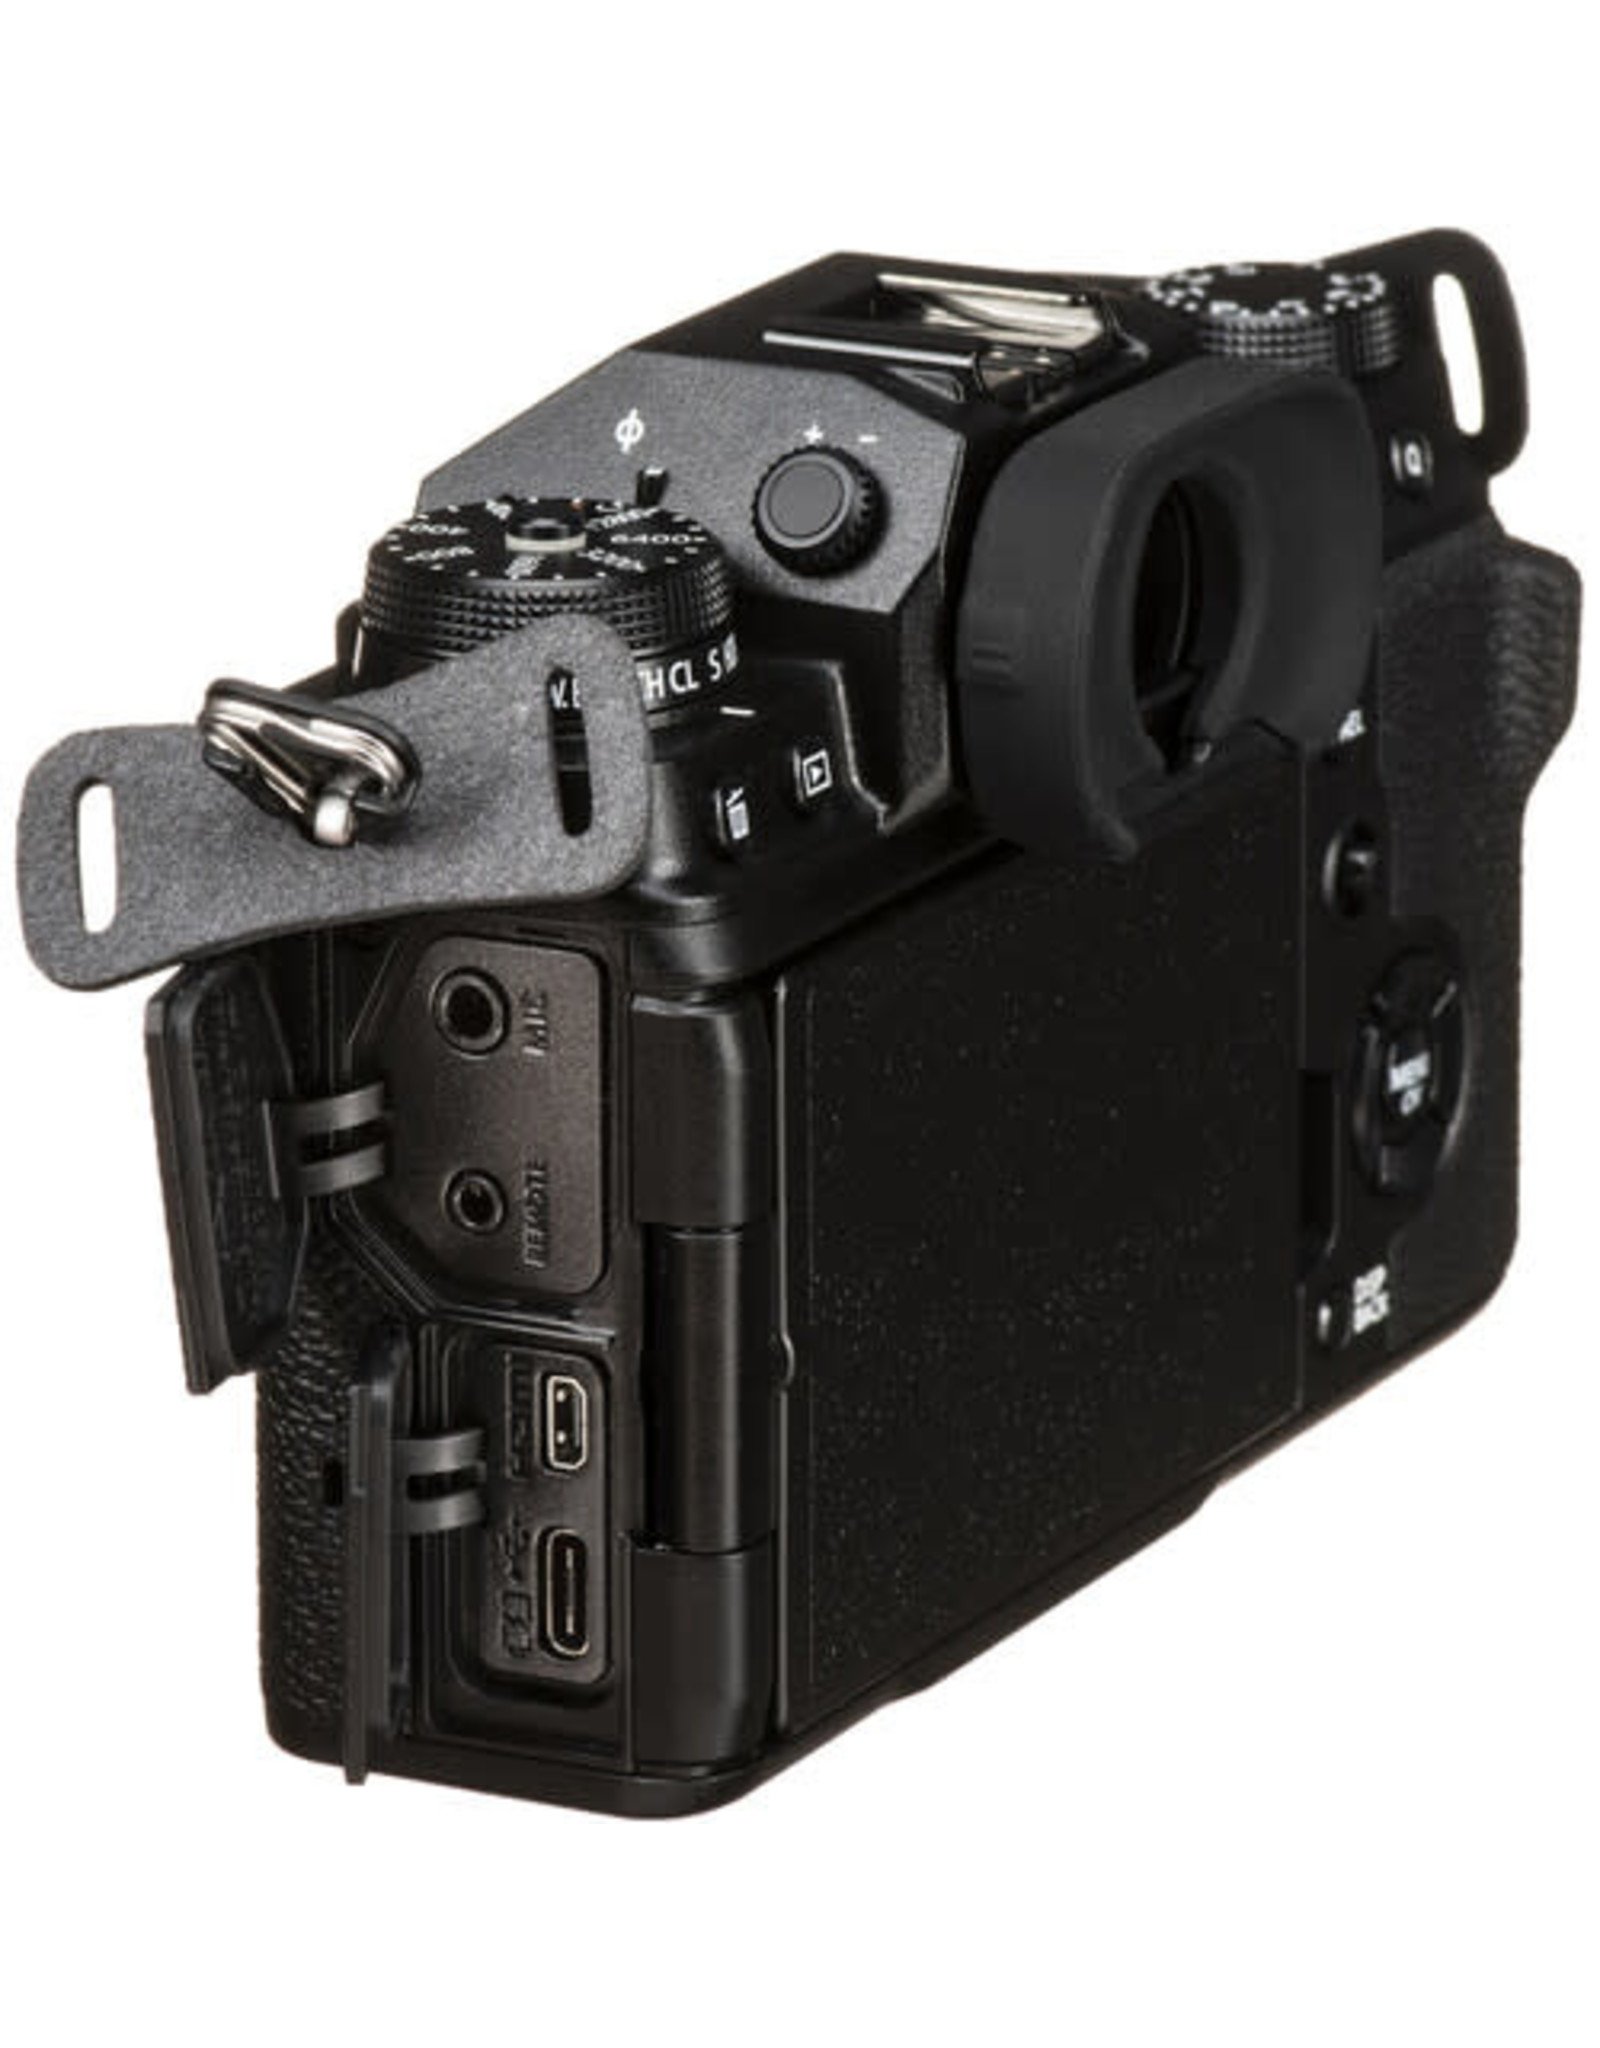 FUJIFILM X-T4 Mirrorless Camera (Black)